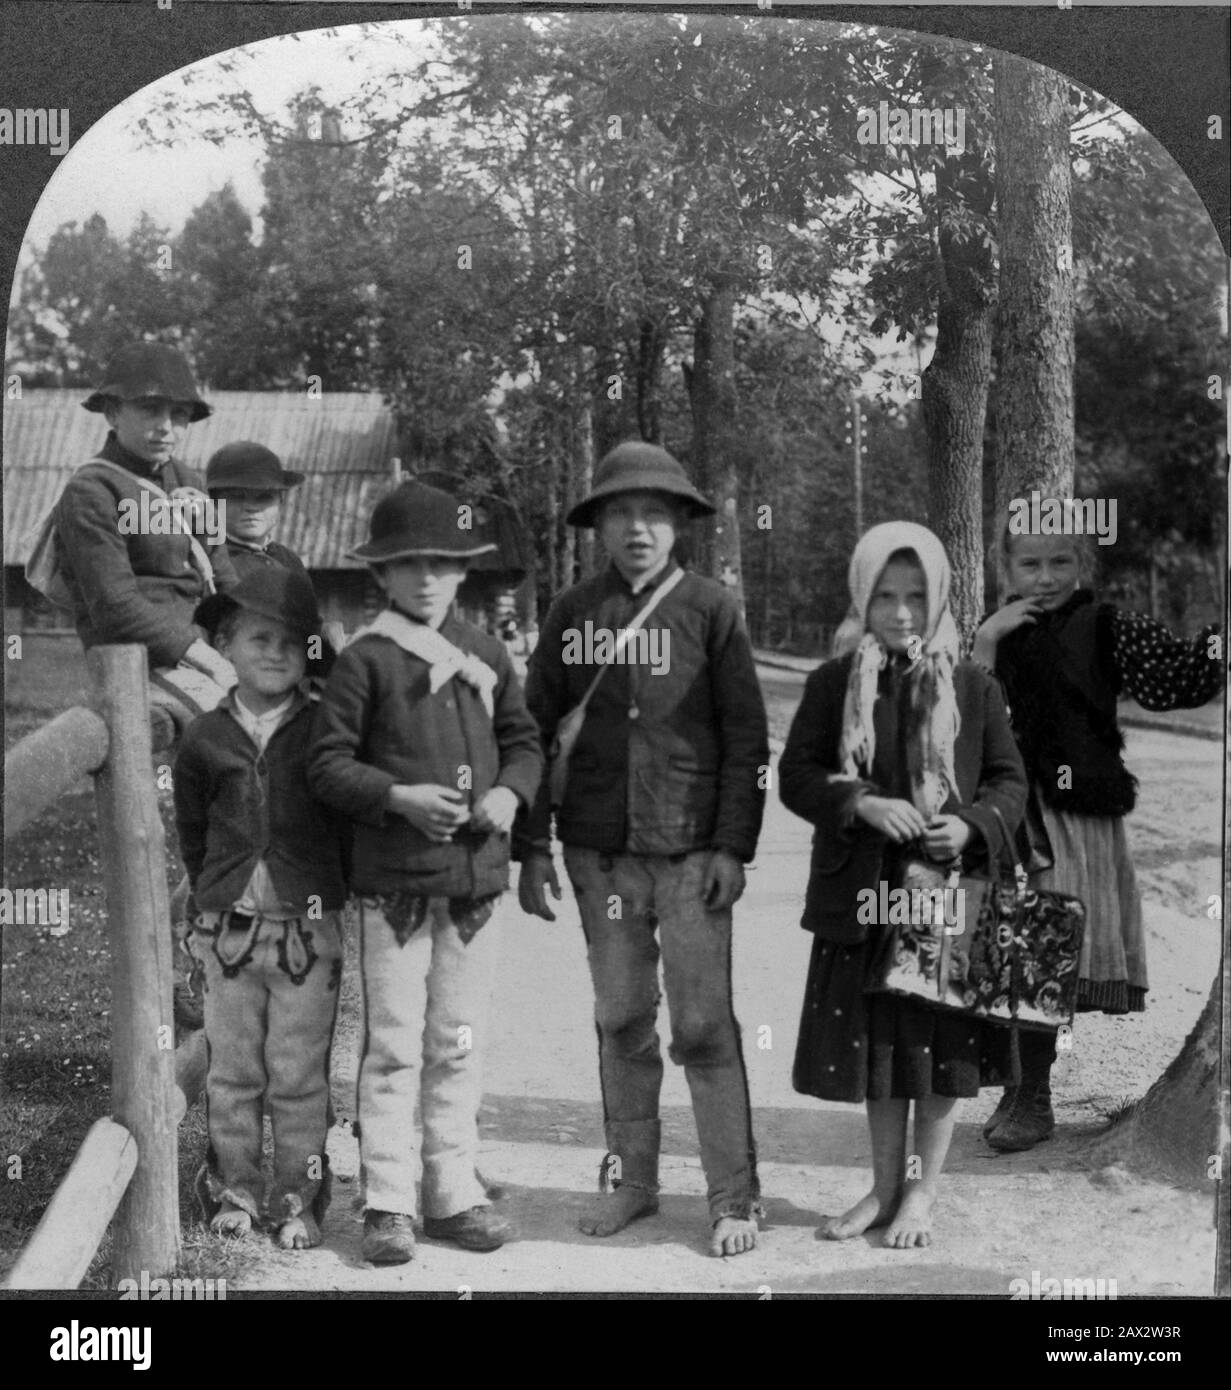 1918 Ca, Zakopane, Galicien, POLEN: Die Kinder der Schule im Dorf ZAKOPANE. Foto von Keystone View Company, USA . - SCUOLA - BAMBINI - BAMBINO - BAMBINA - KIND - KINDHEIT - INFANZIA - scolari - villaggio - FOTO STORICHE - HISTORIENFOTOS - GEOGRAFIA - GEOGRAPHIE - VECCHIA Europa - ALTEUROPA - POLONIA - Polacchi - Polacca - GALIZIA - Alunni - Barfußbaredi Nudi ---- Archivio GBB Stockfoto